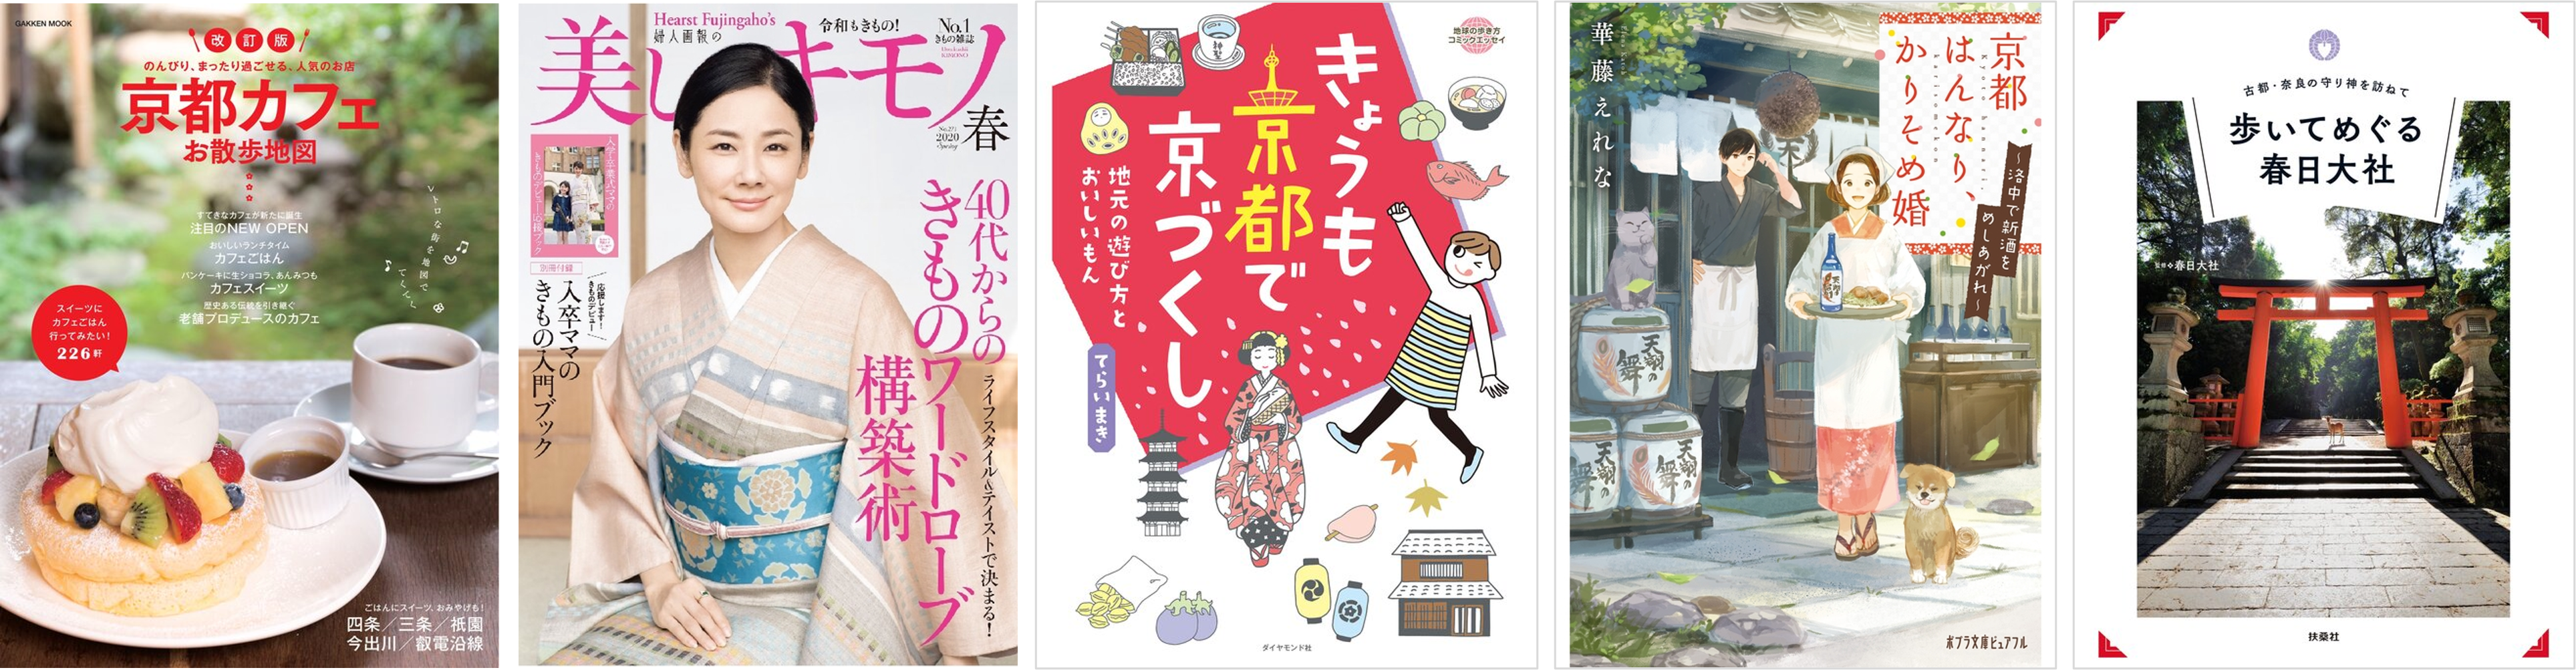 Save 25-50% on Japanese language titles